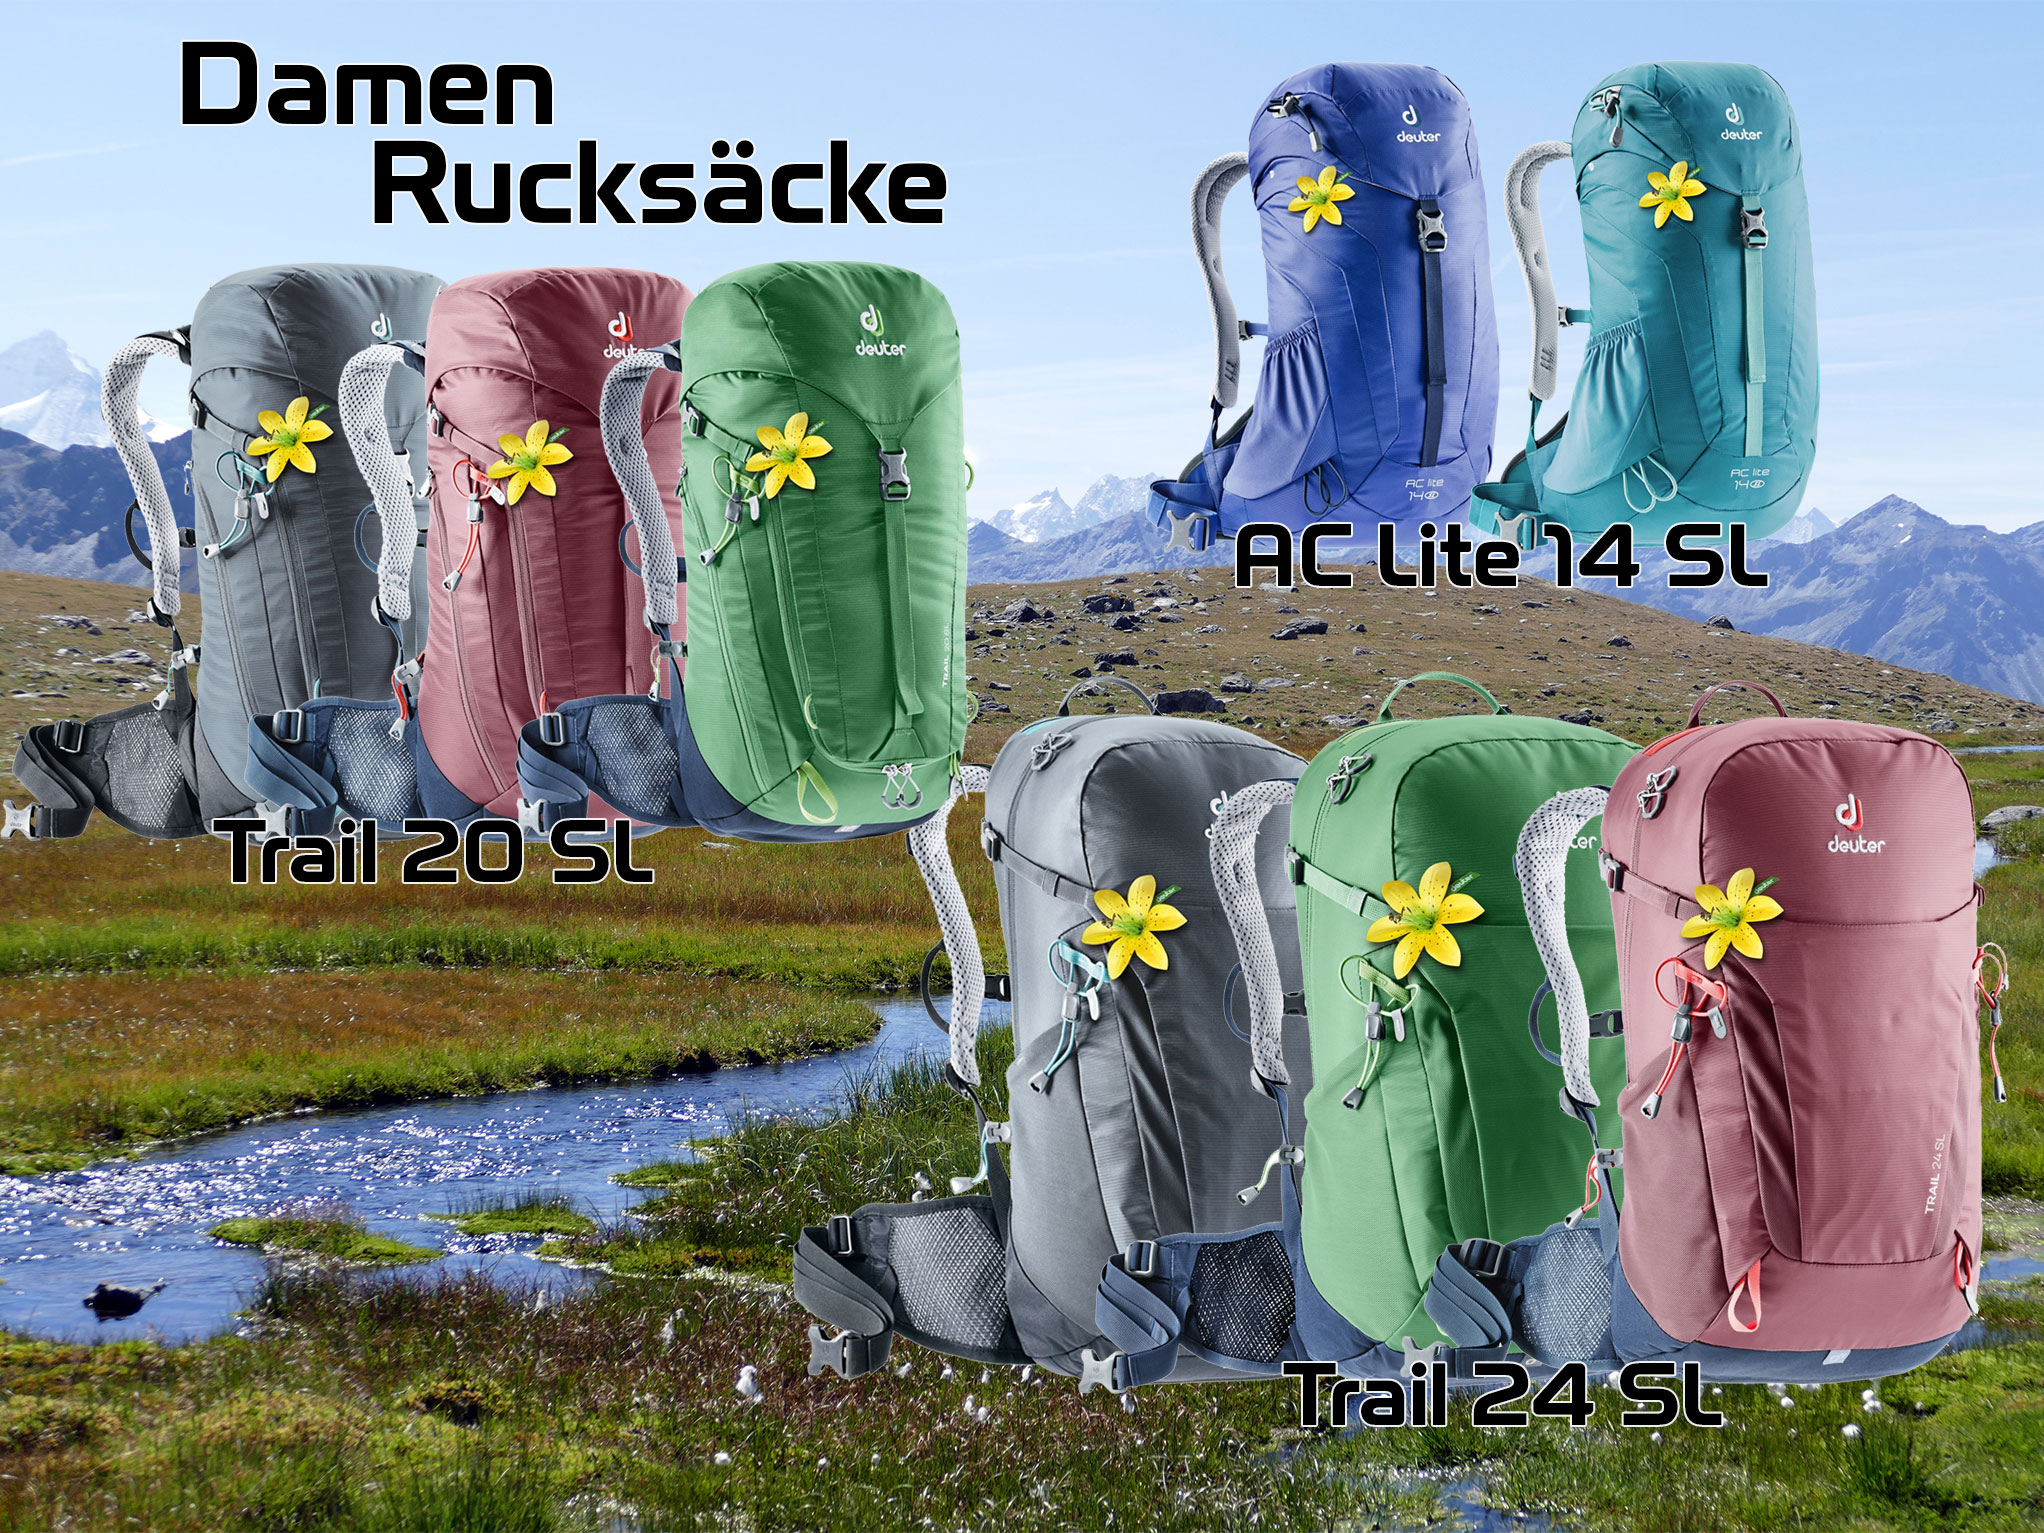 wannihorn-sport-grächen-graechen-deuter-rucksack-rucksäcke-rucksaecke-damen-women-backpack-berg-mountain-wallis-valais